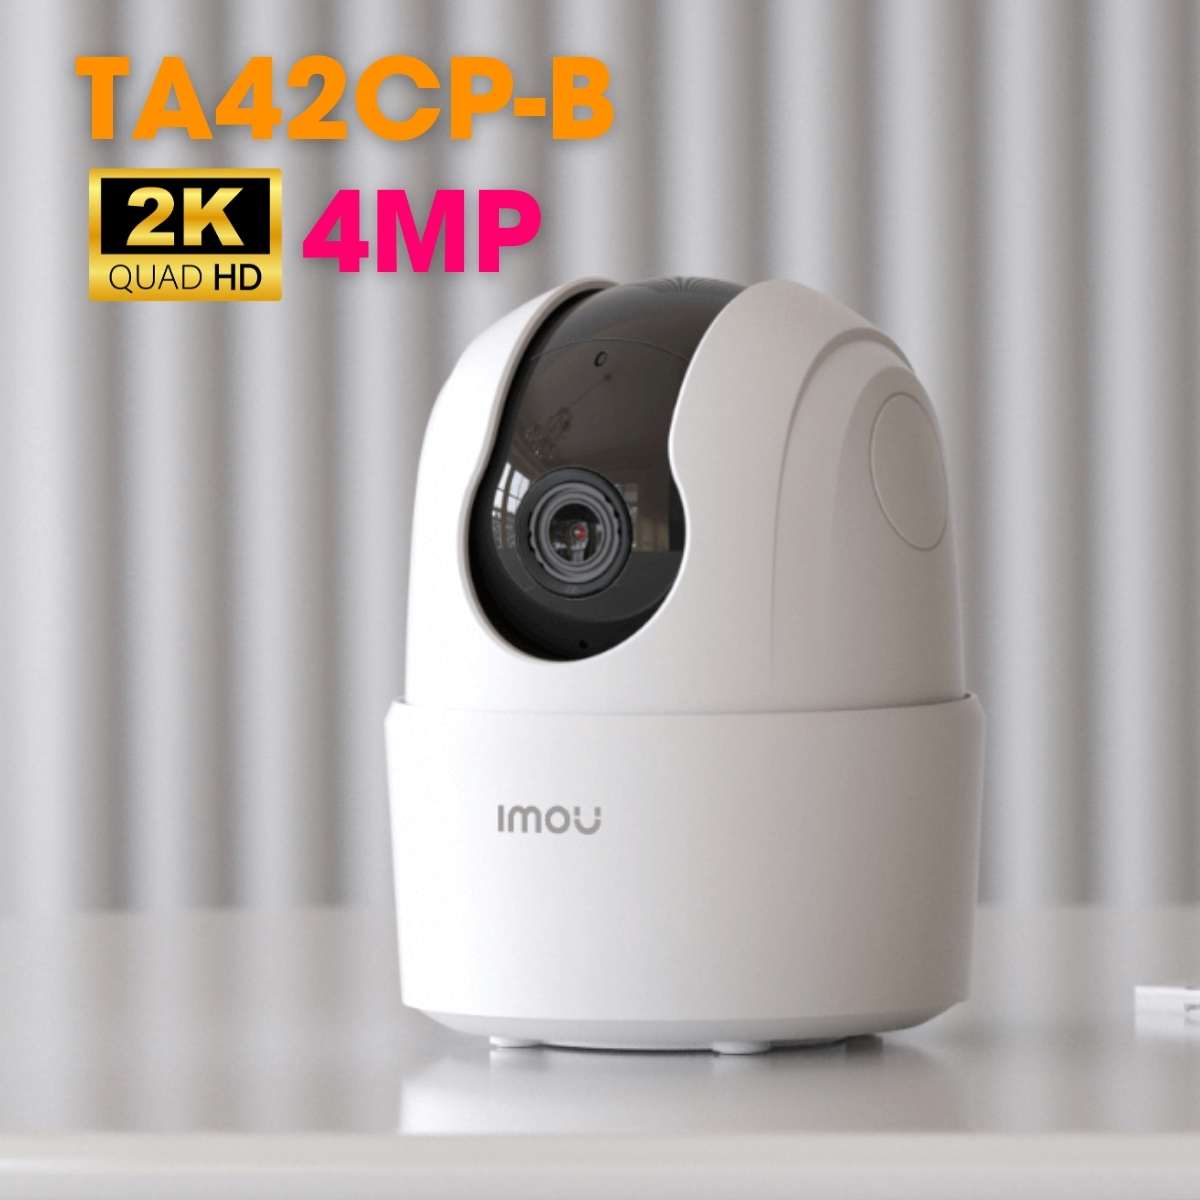 Camera Wifi không dây IMOU IPC-TA42CP-B 4MP theo dõi chuyển động, tích hợp còi báo động